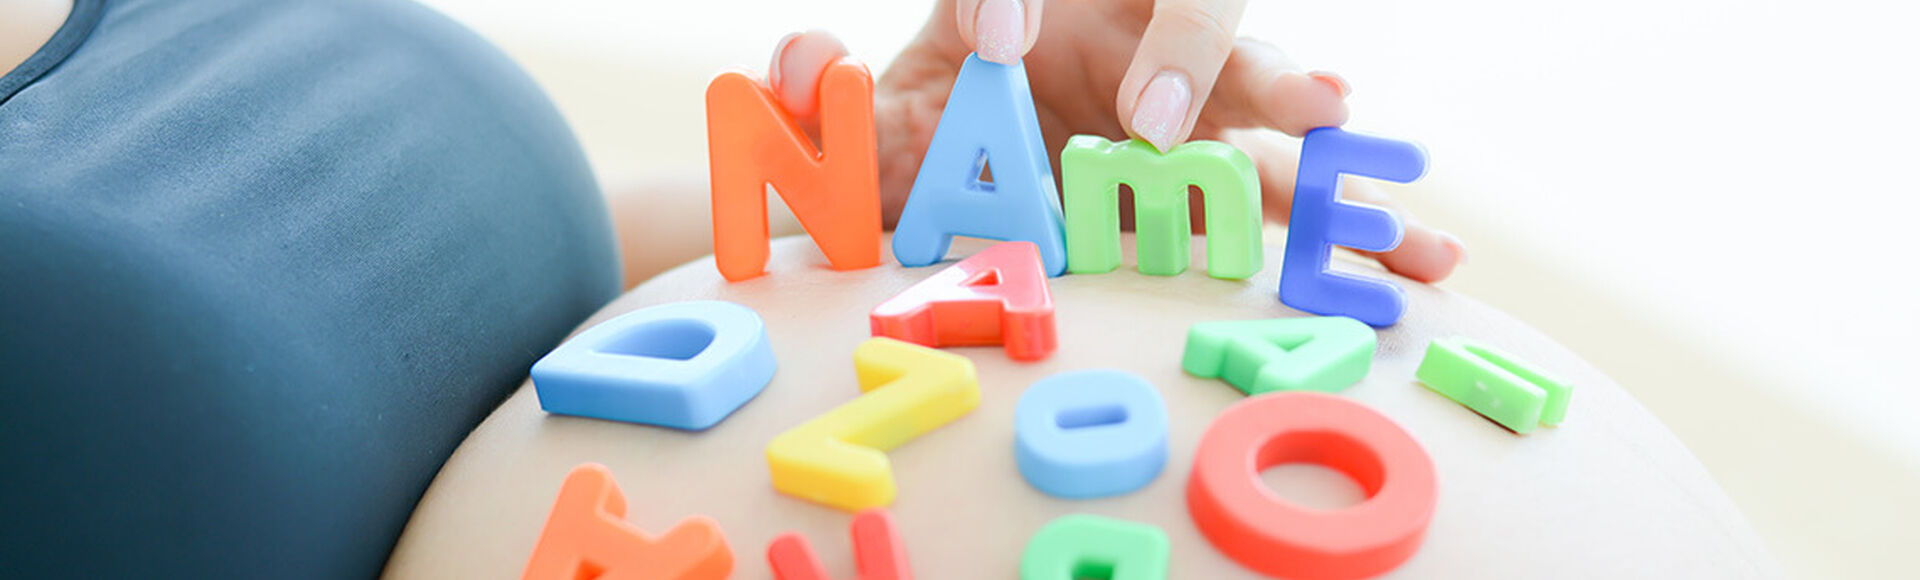 ¿Cómo elegir el nombre de mi bebé según el apellido?  | by Huggies Argentina